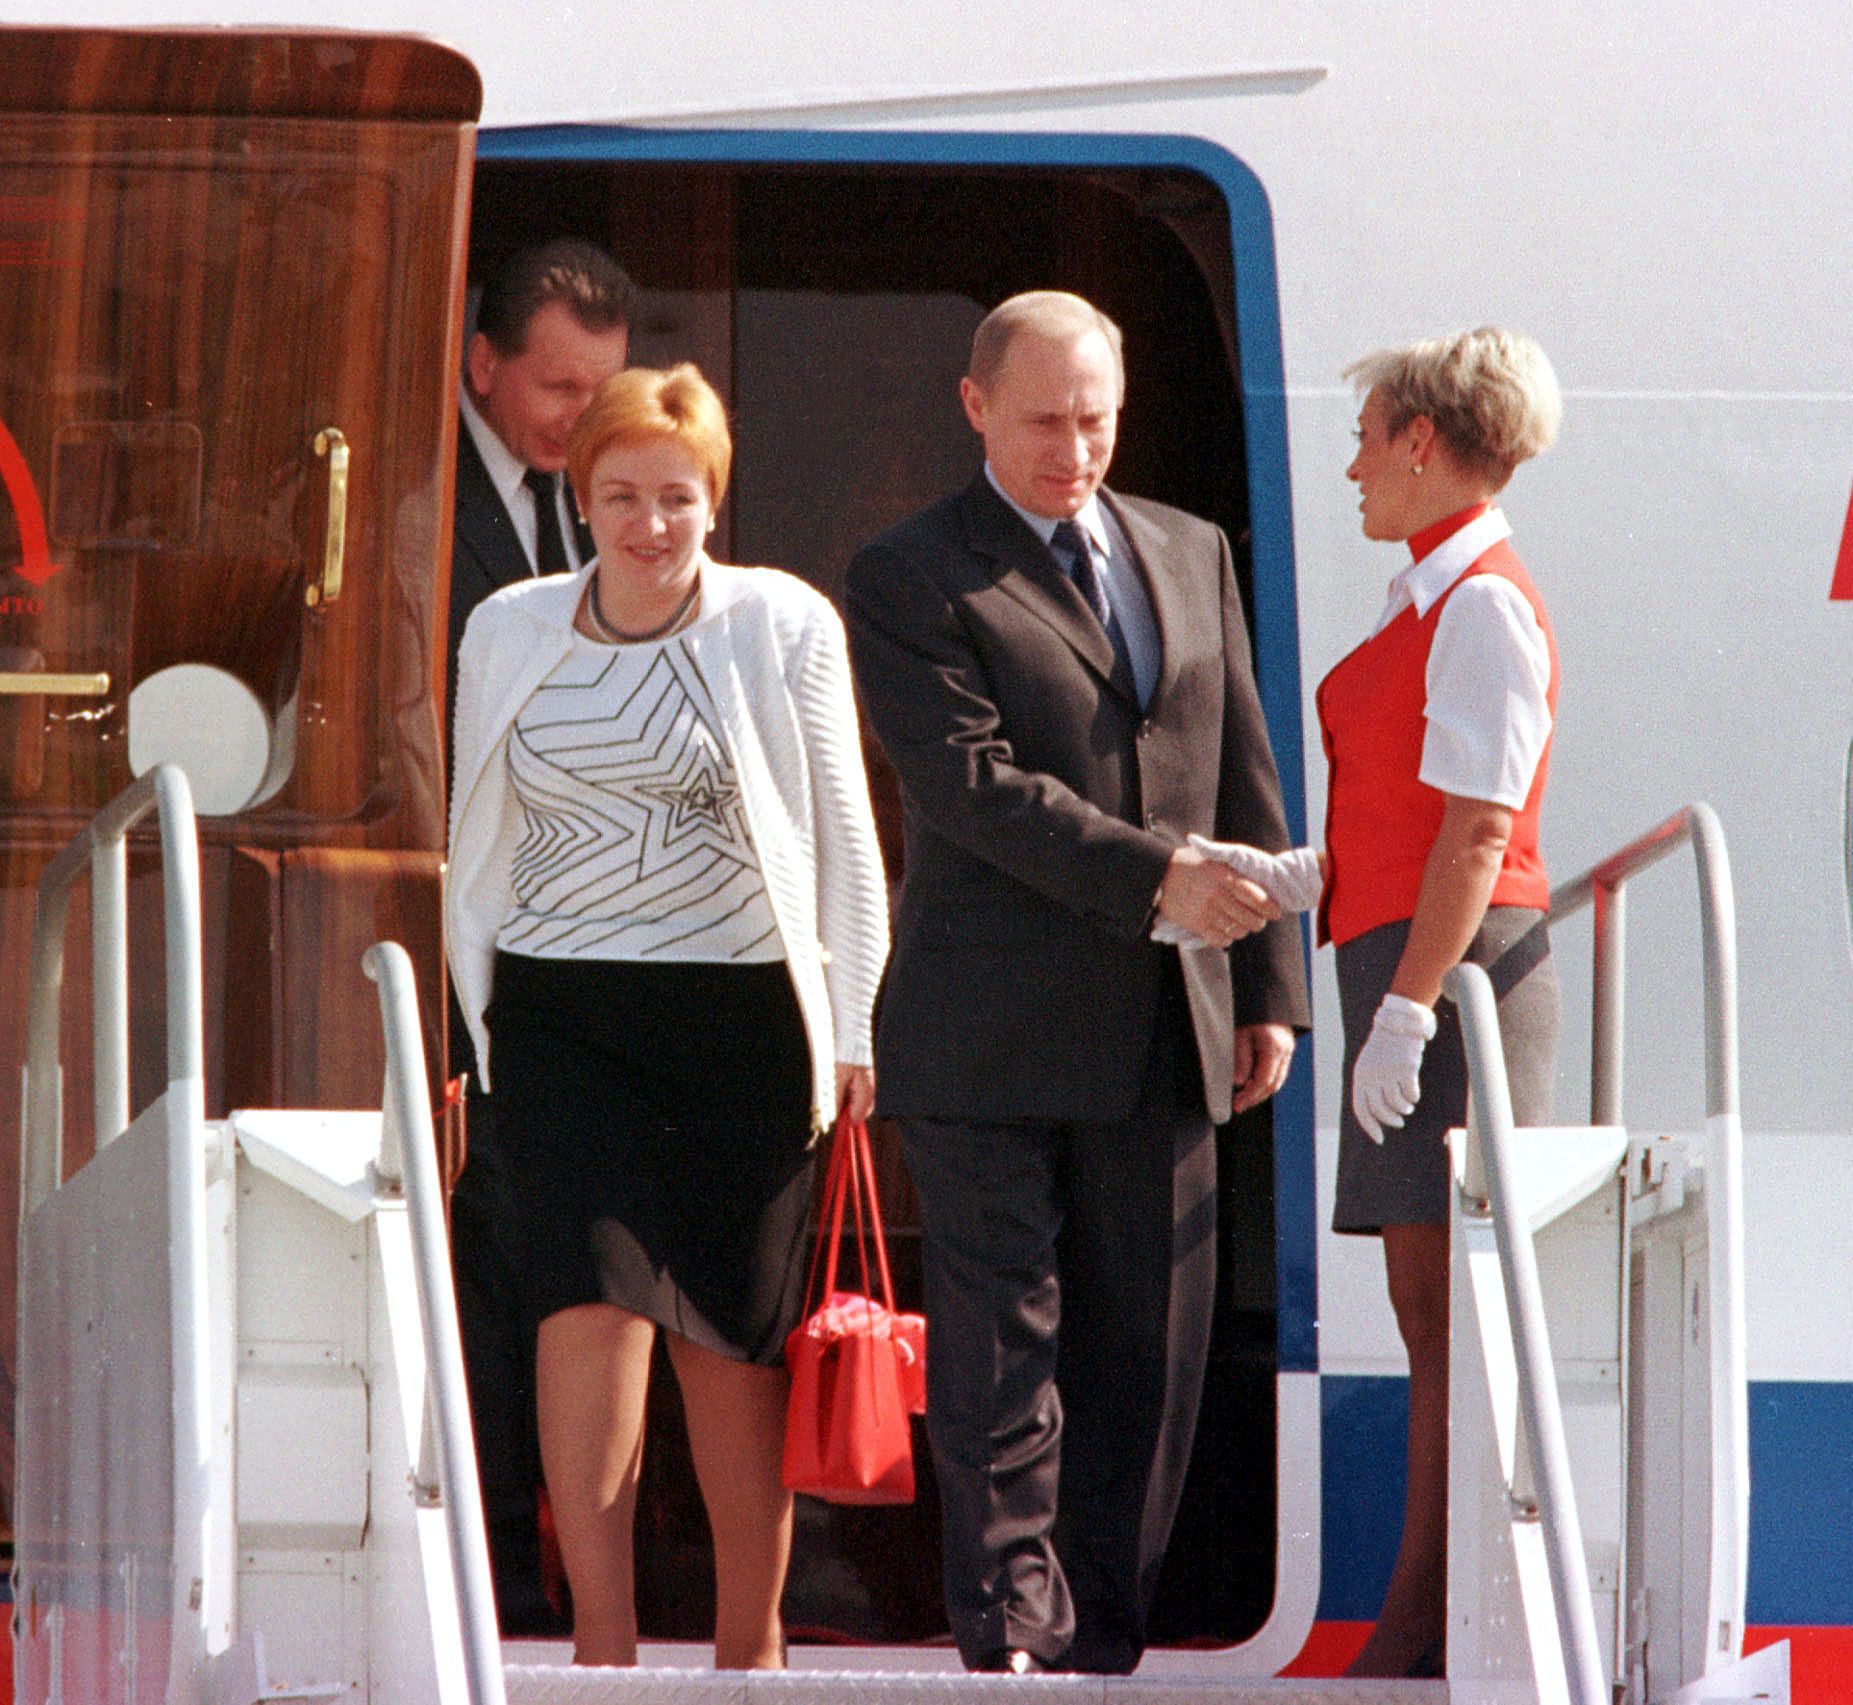 14 ноември 2001 г. - Владимир Путин пристига със съпругата си Людмила в Хюстън, Тексас за преговори с американския държавен глава Джордж Уокър Буш.